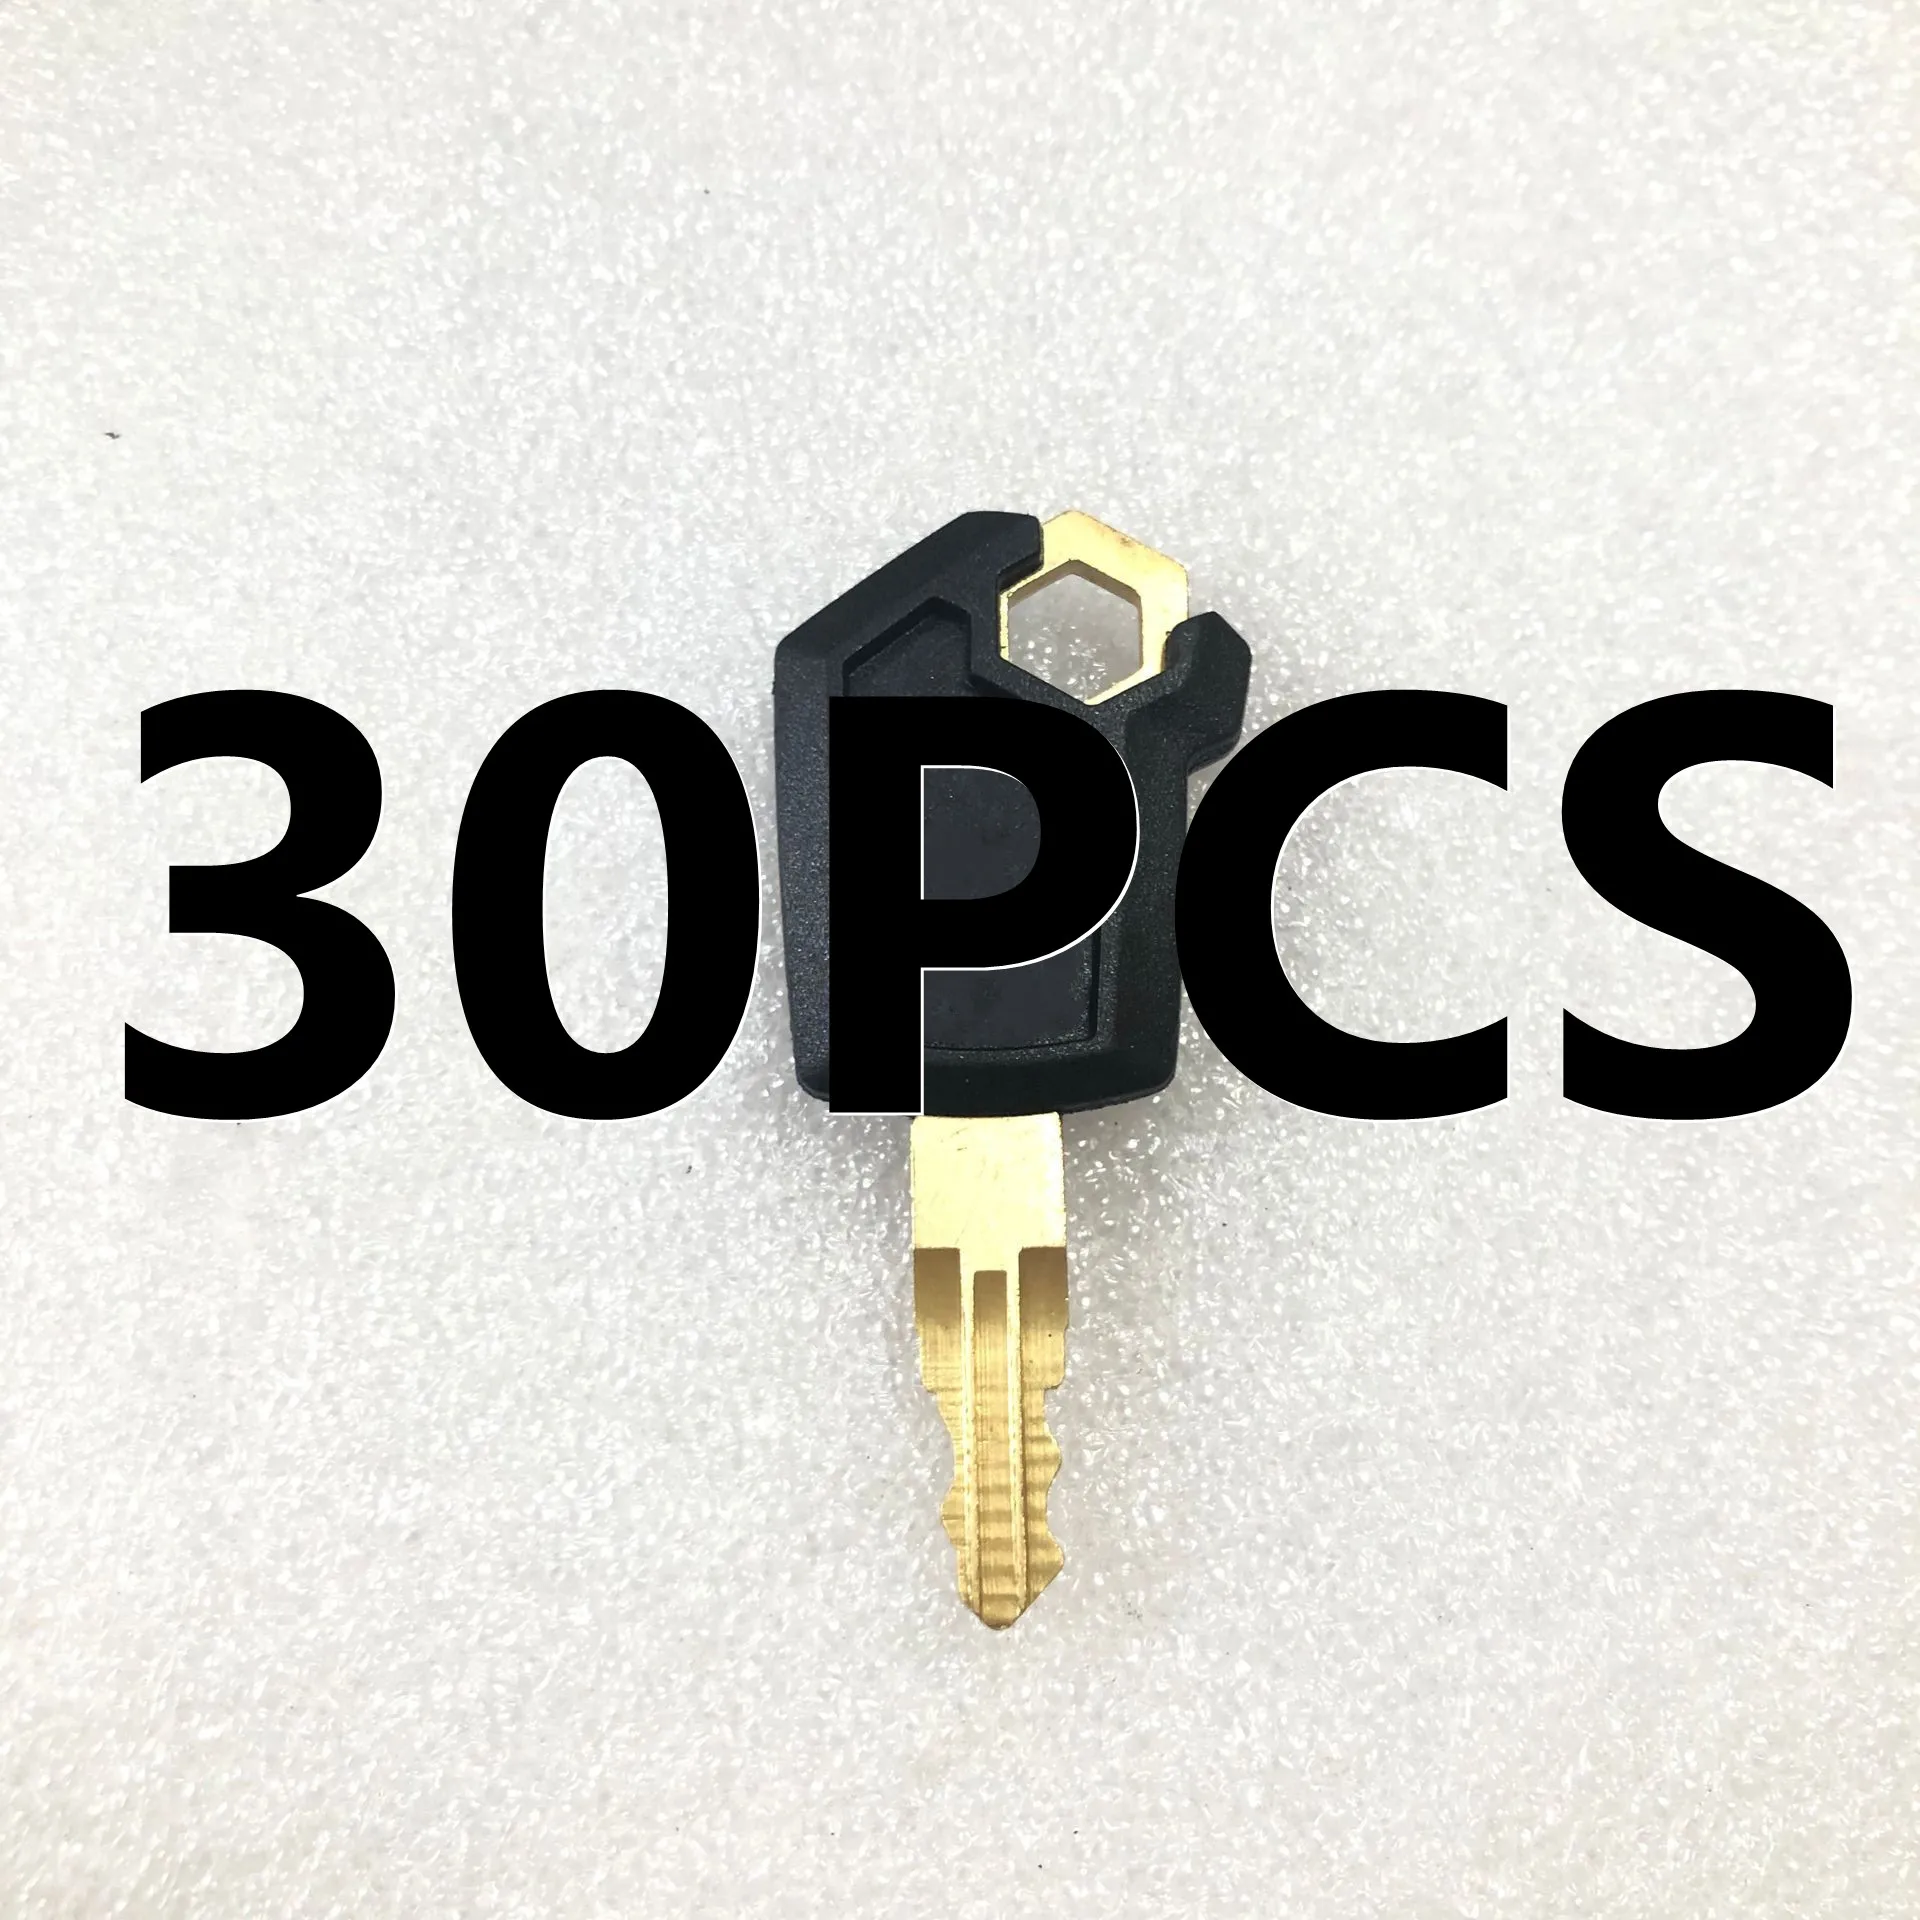 

Медный ключ зажигания 5P850 0 для гусеничного экскаватора E200B E320/B/C/D, 30 шт.